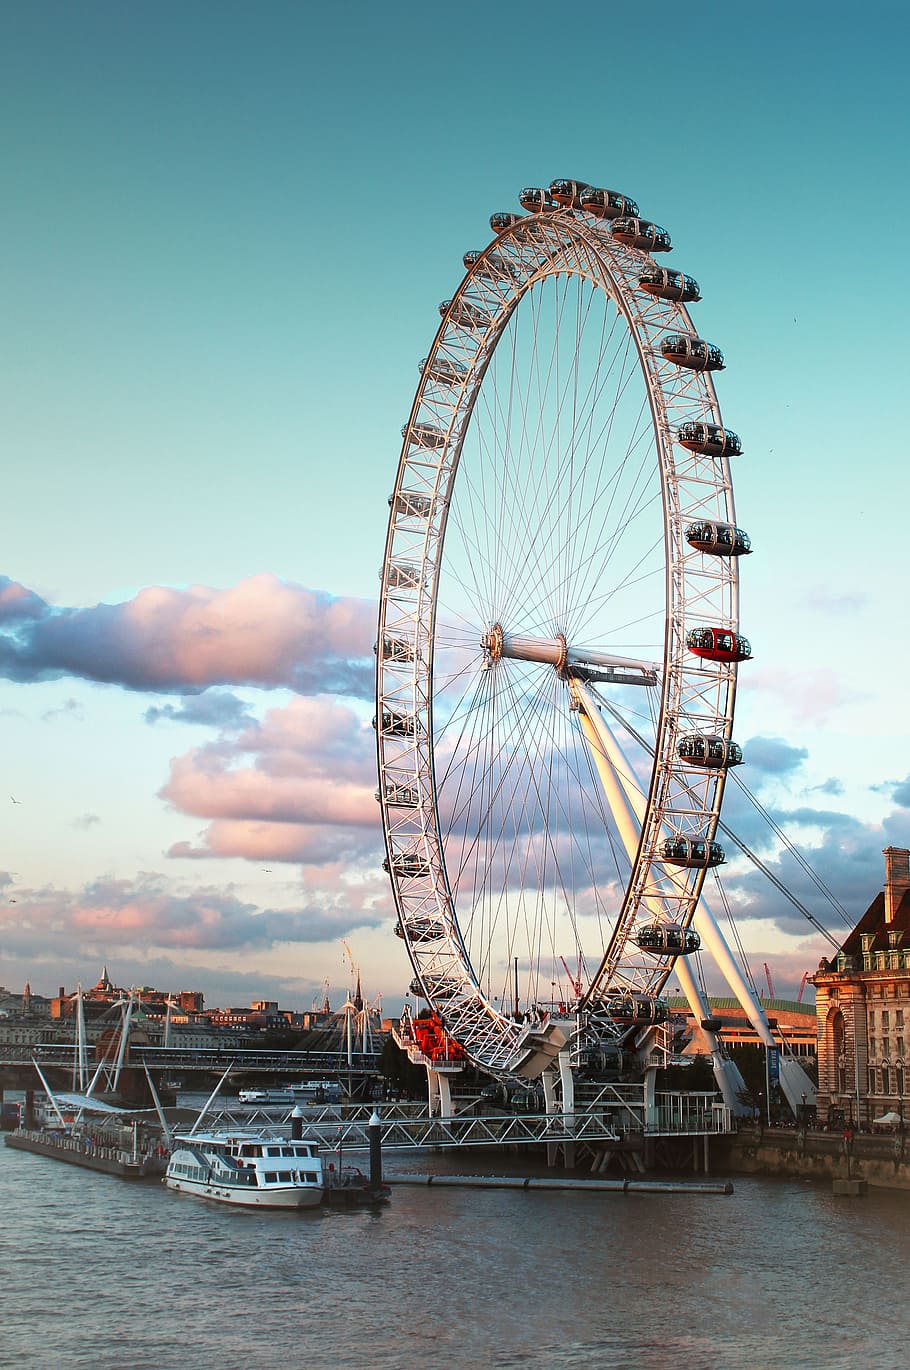 HD wallpaper: London Eye, London, england, trip, clouds, sky, water, heaven  | Wallpaper Flare